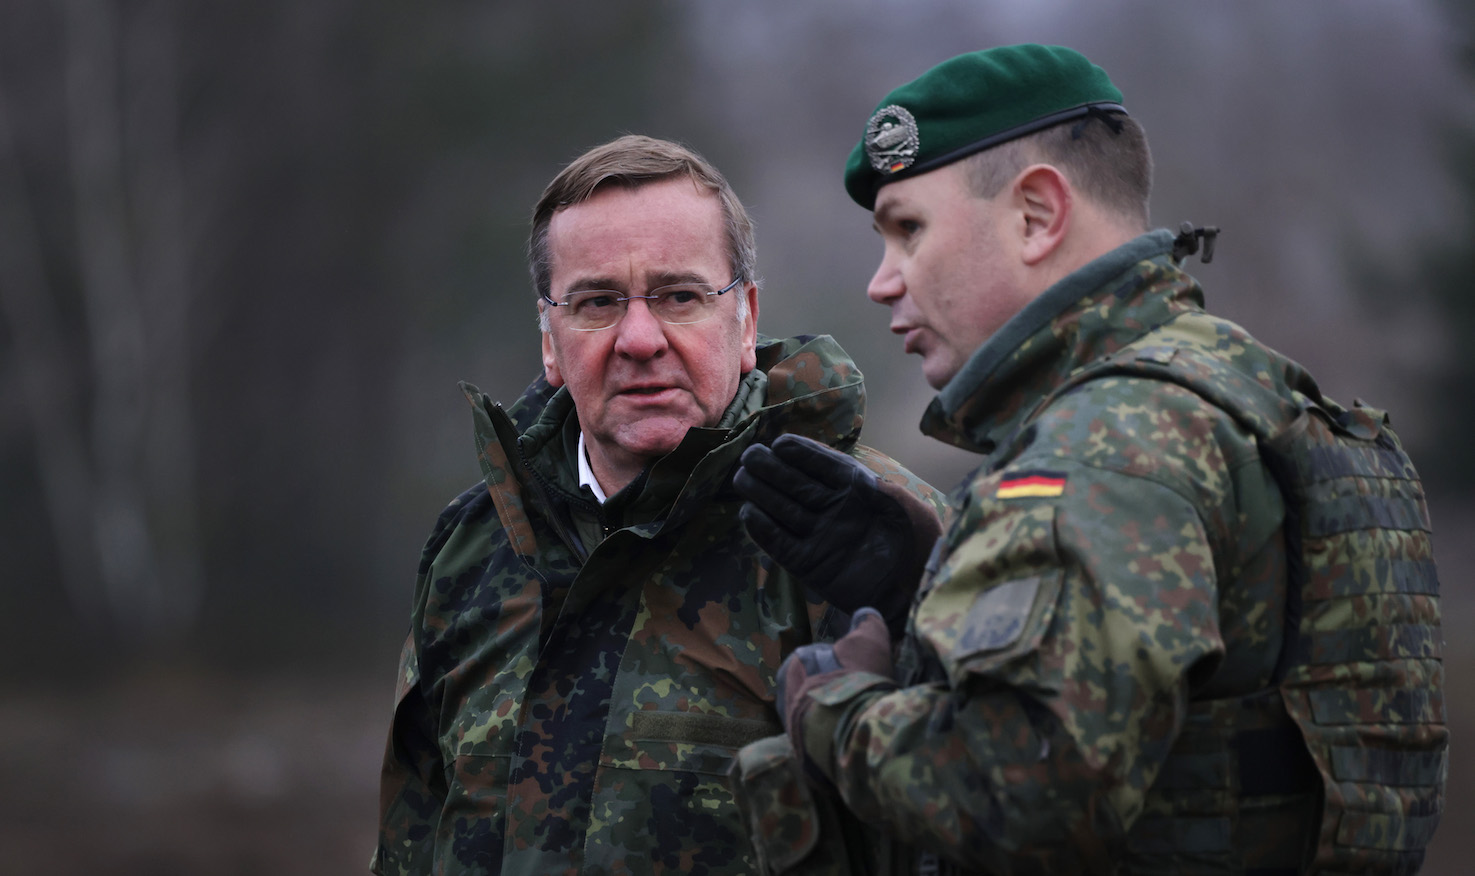 Der Aufstieg des deutschen Verteidigungsministers ist unwahrscheinlich